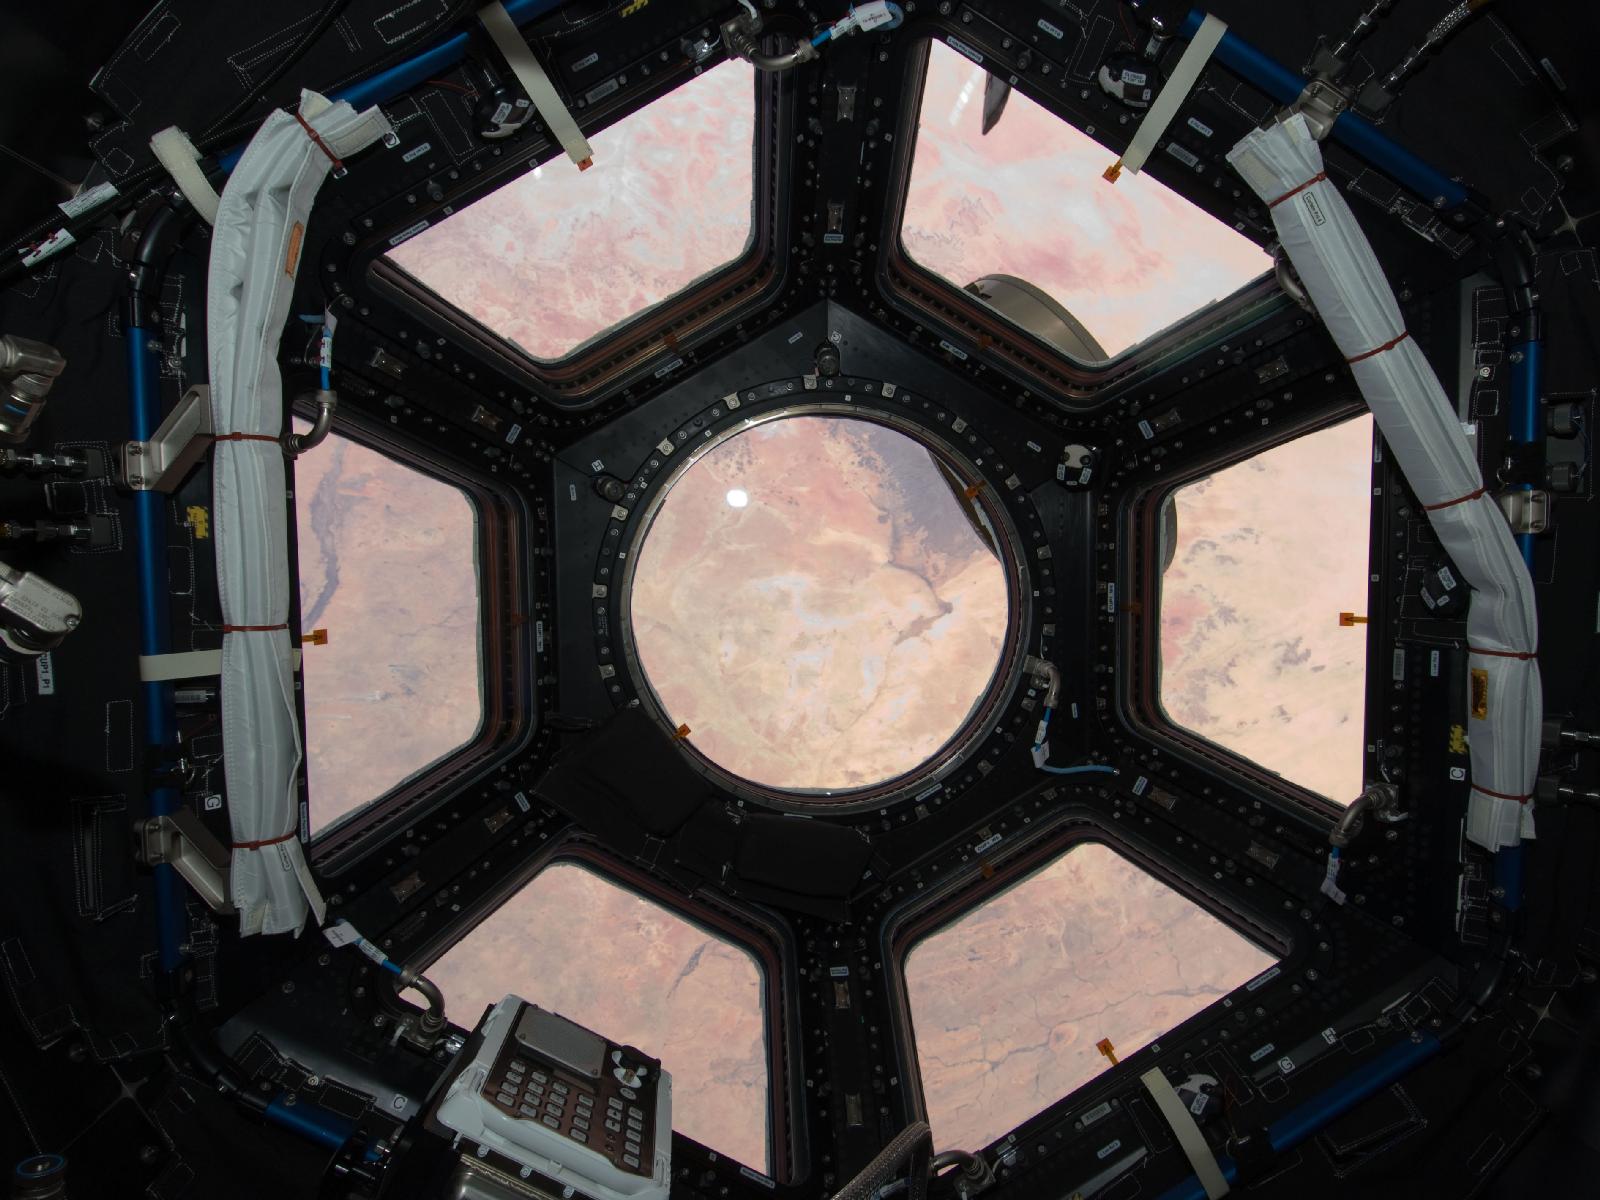 Cupola; from NASA